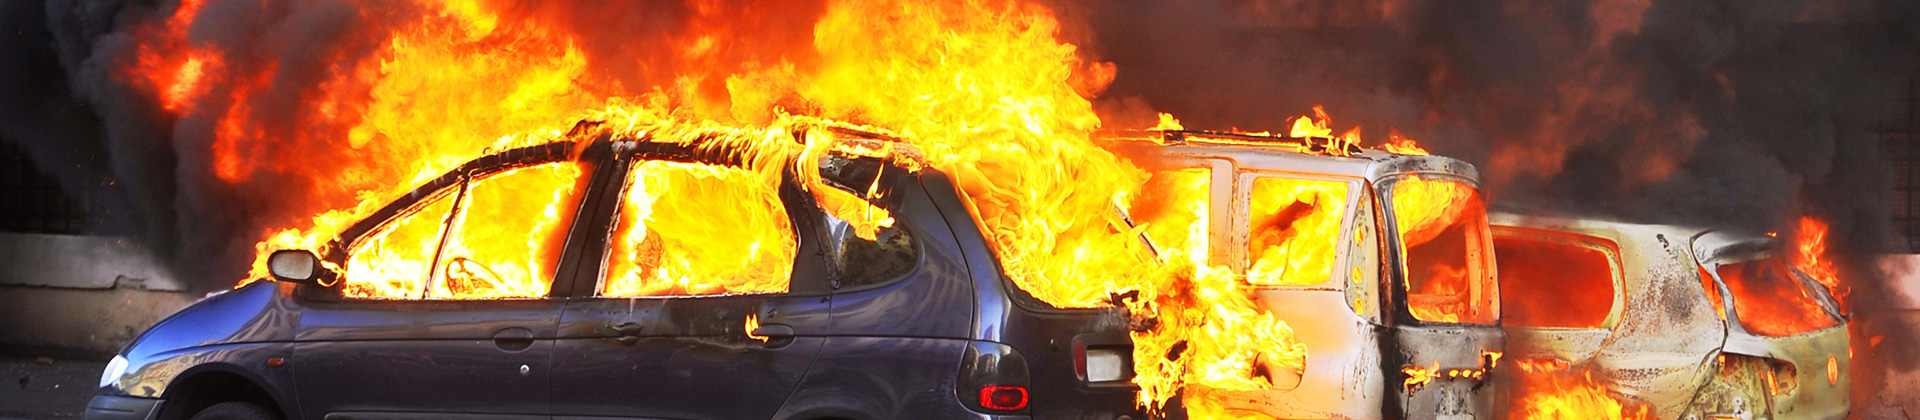 burning-cars